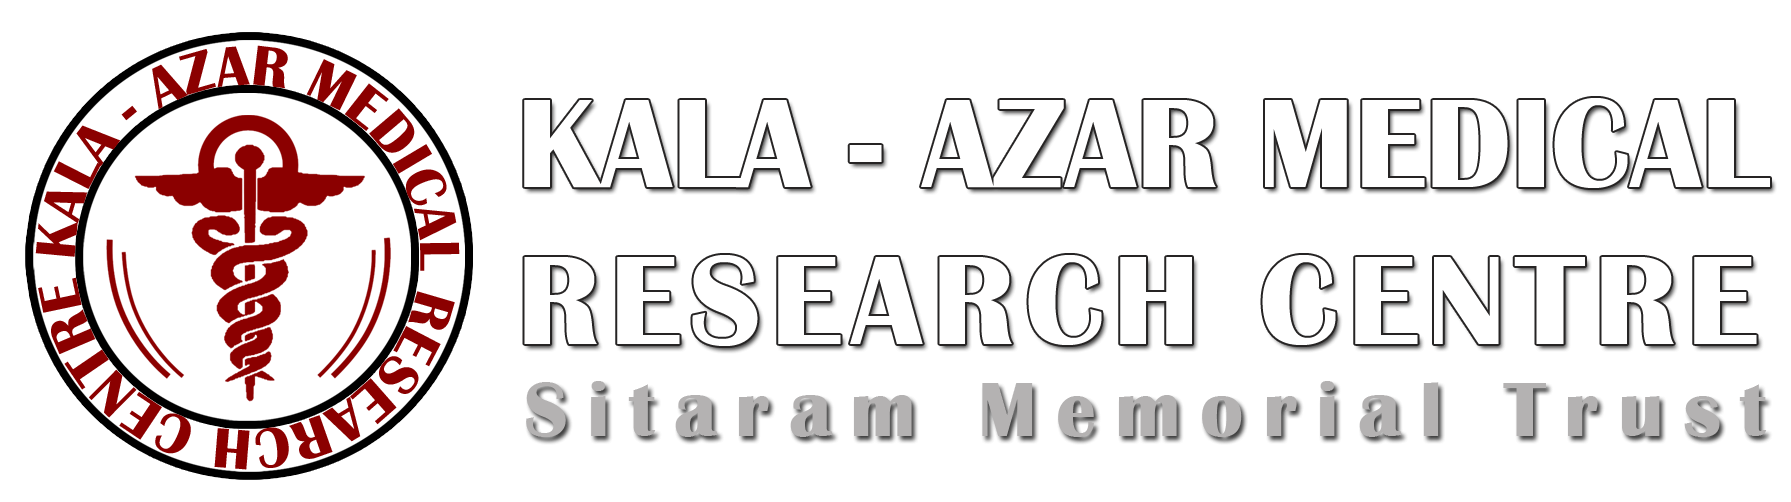 Kala Azar Medical Research Centre logo